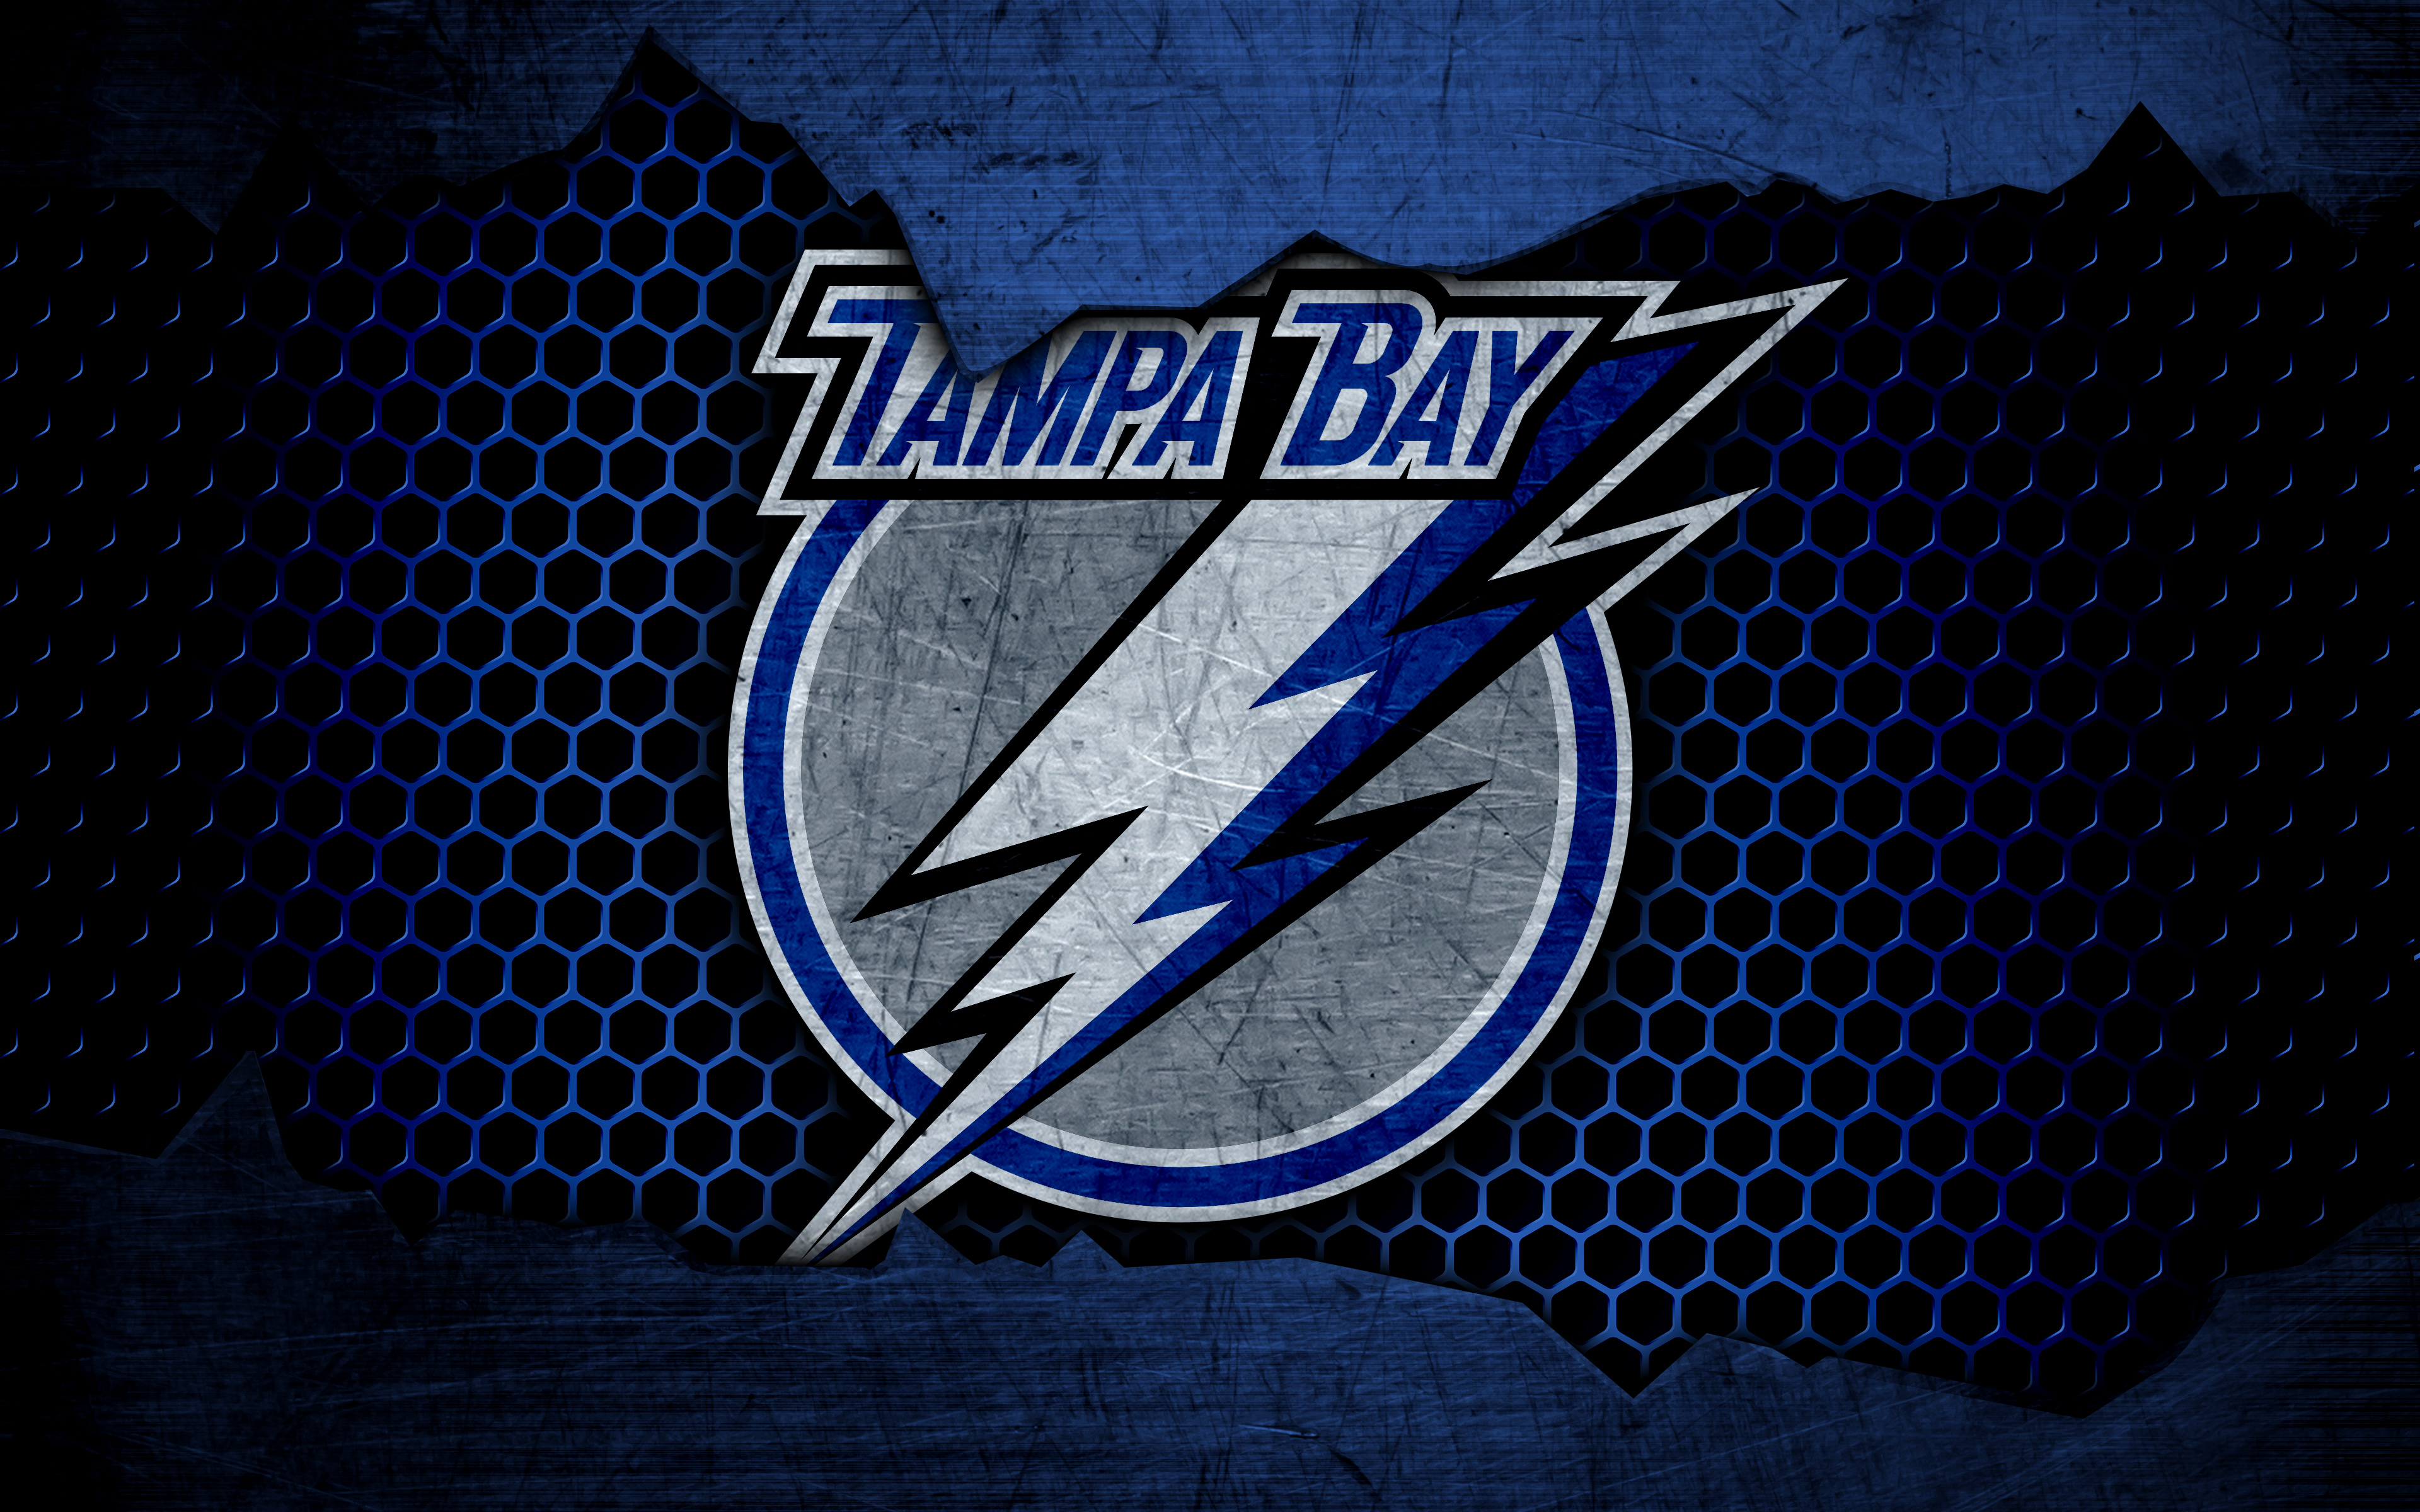 tampa bay lightning, sports, emblem, logo, nhl, hockey